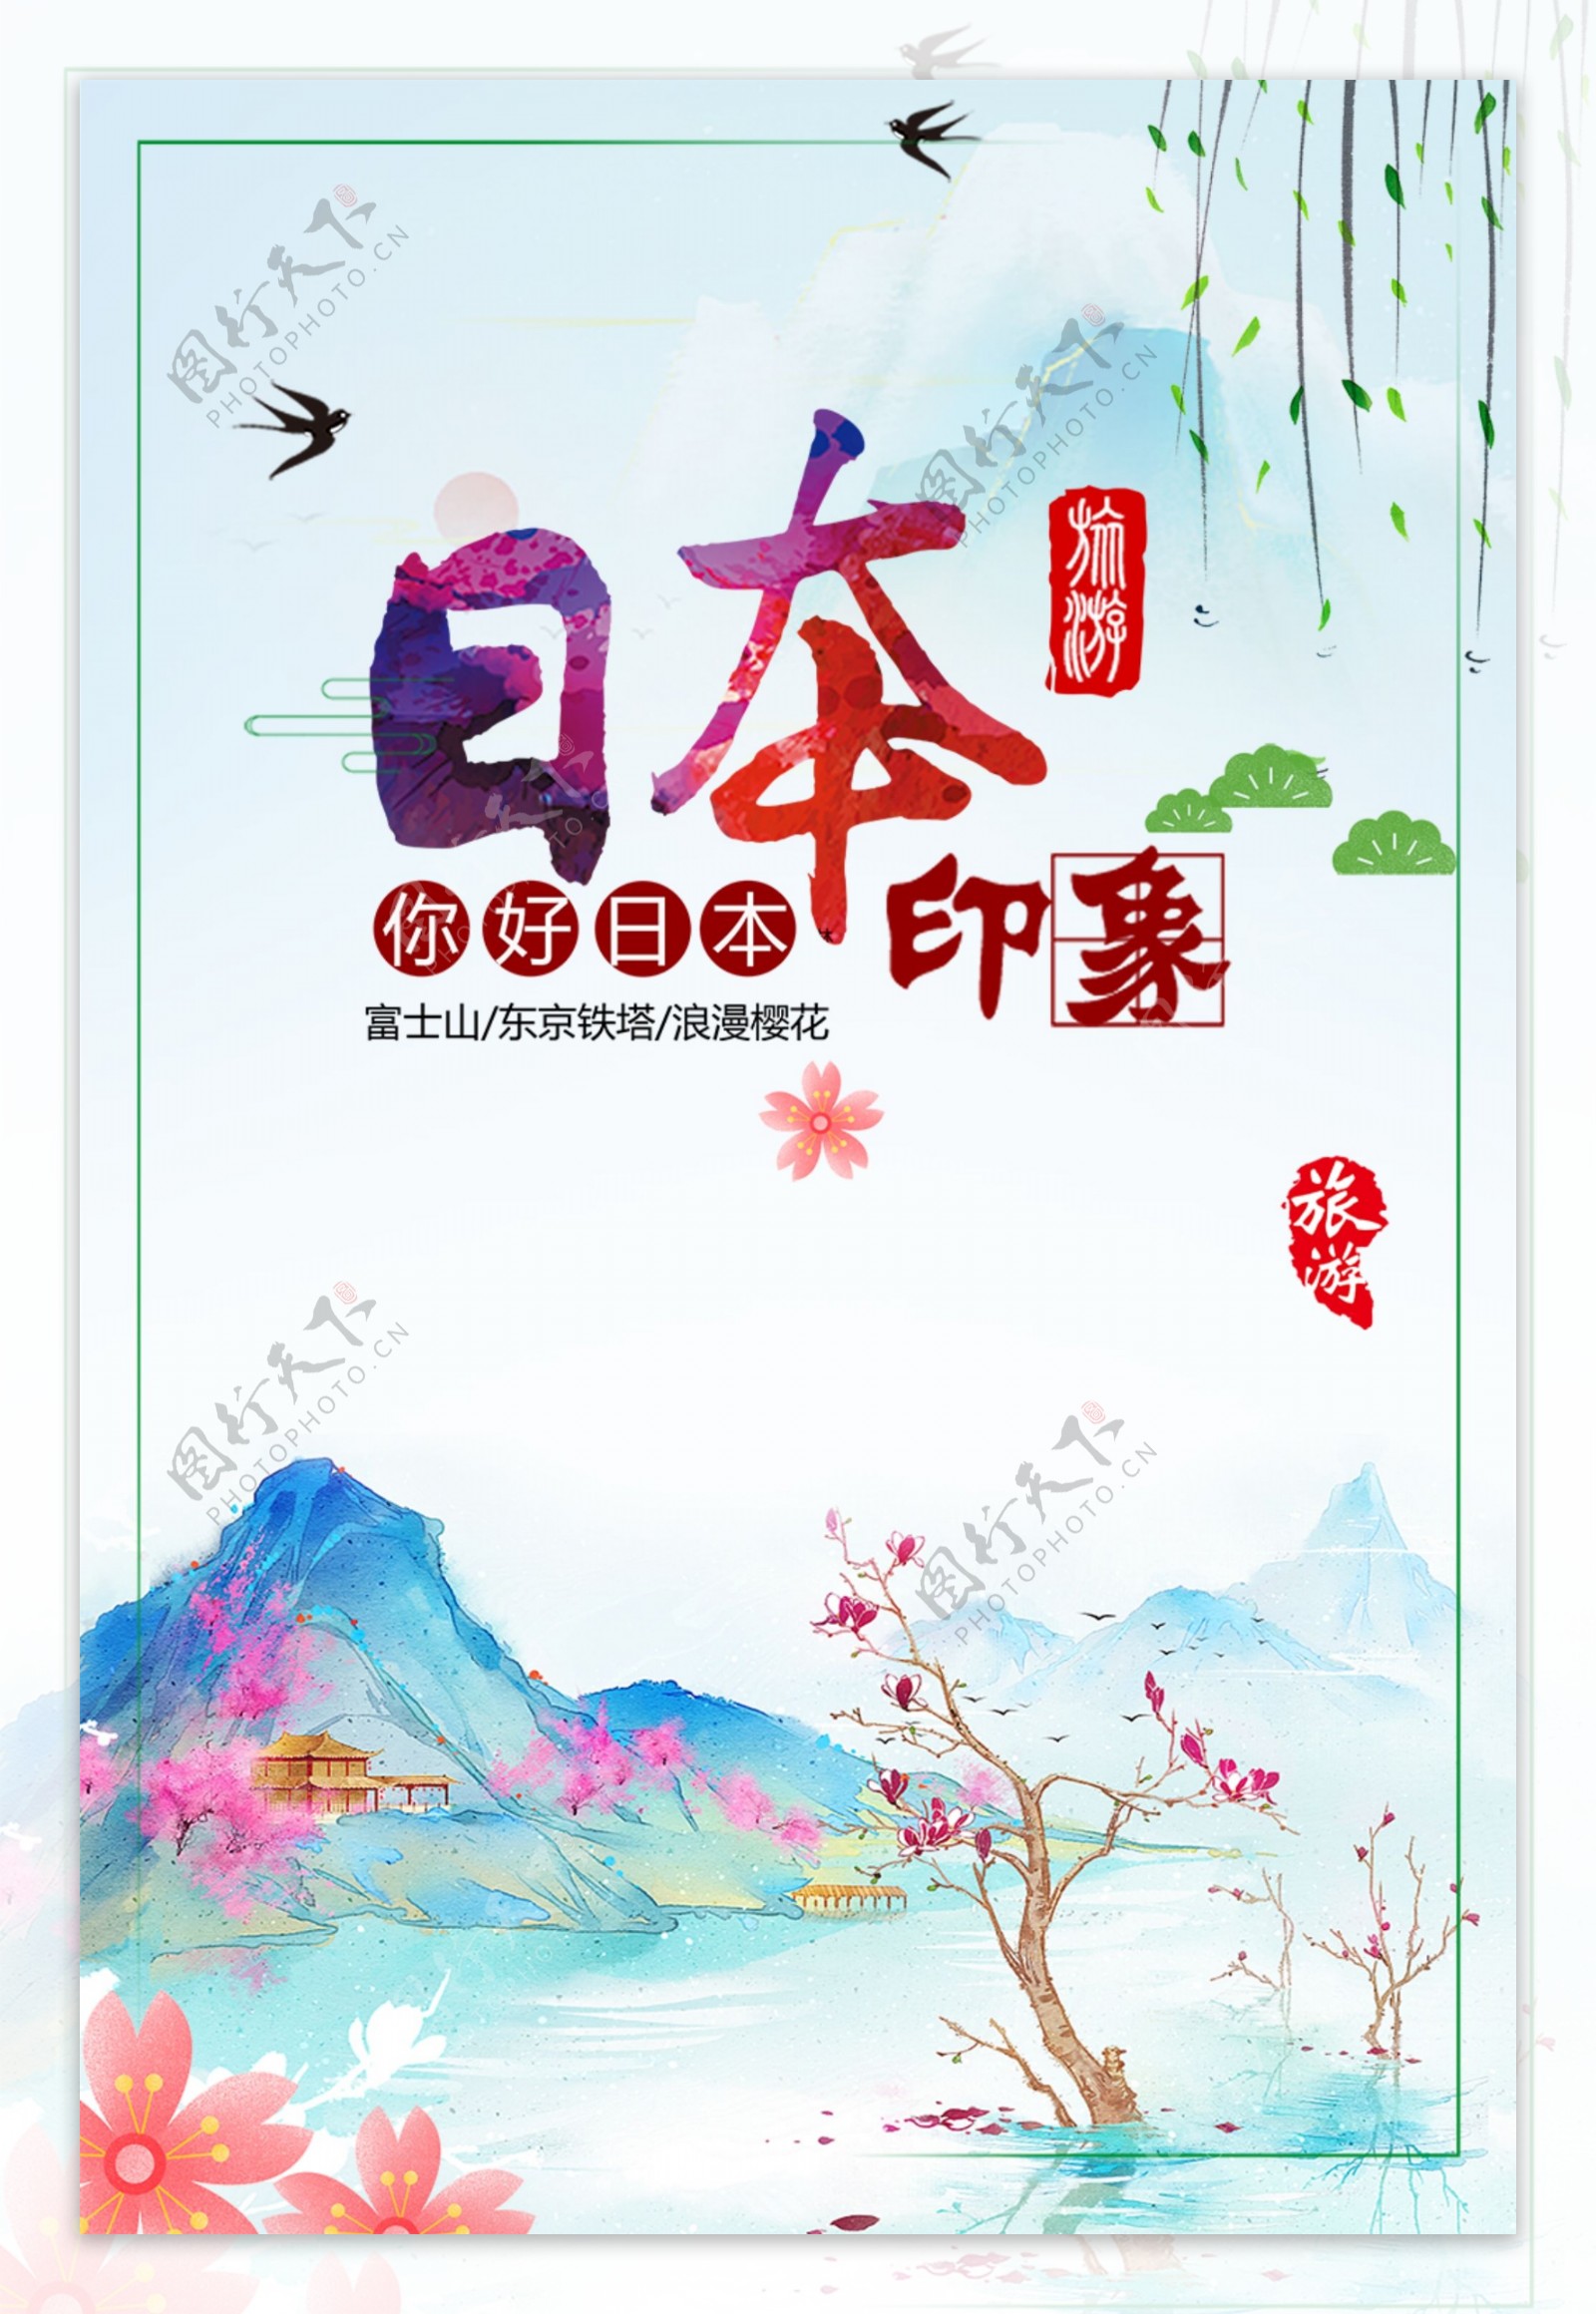 日本温泉公司旅游海报